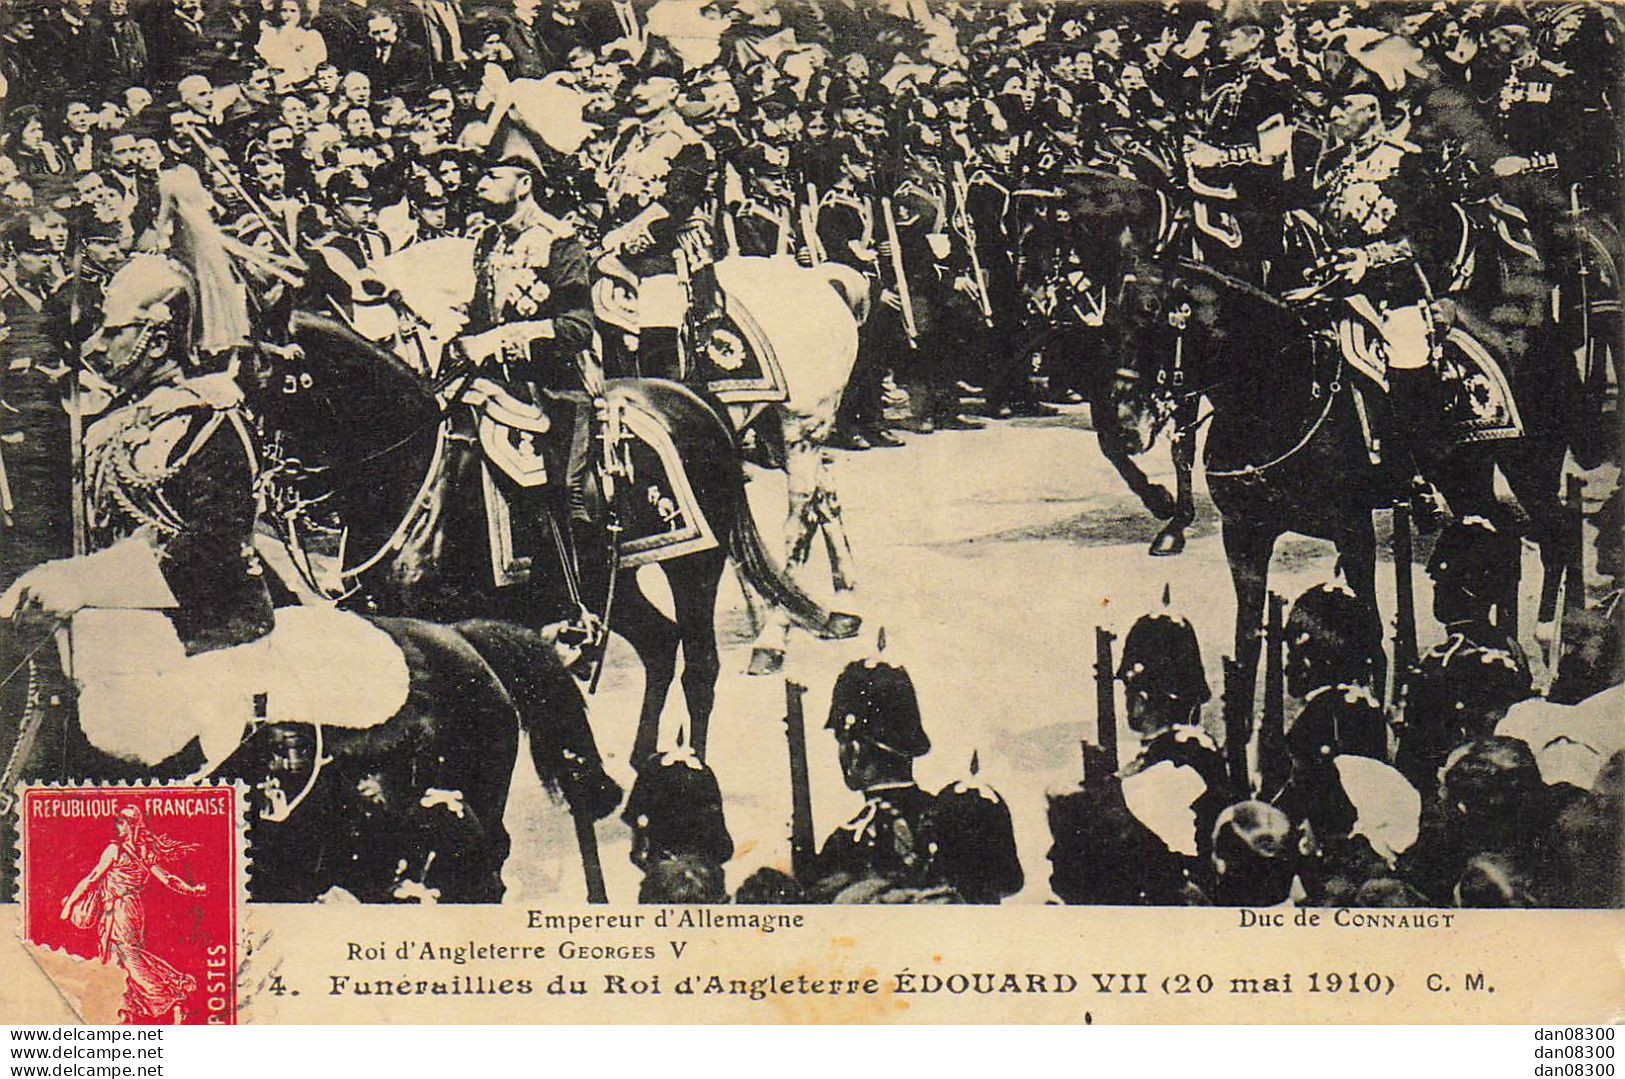 FUNERAILLES DU ROI D'ANGLETERRE EDOUARD VII 20 MAI 1910 EMPEREUR D'ALLEMAGNE ROI D"ANGLETERRE GEORGES V DUC DE CONNAUGT - Funerali